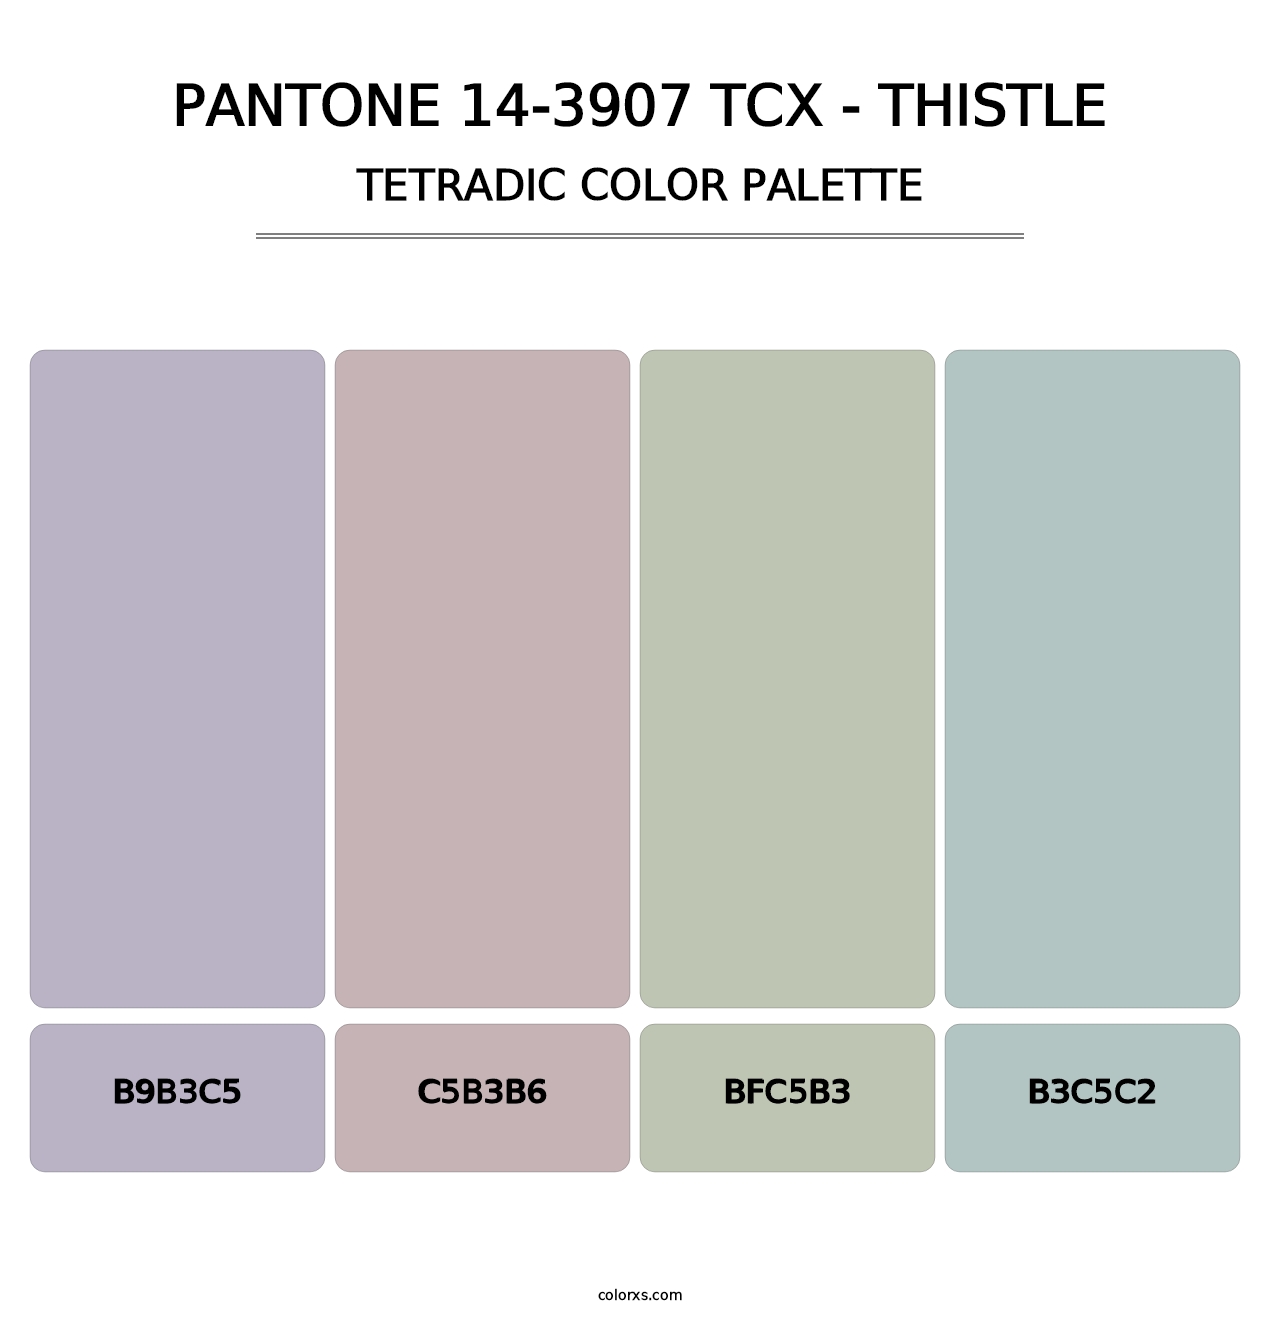 PANTONE 14-3907 TCX - Thistle - Tetradic Color Palette